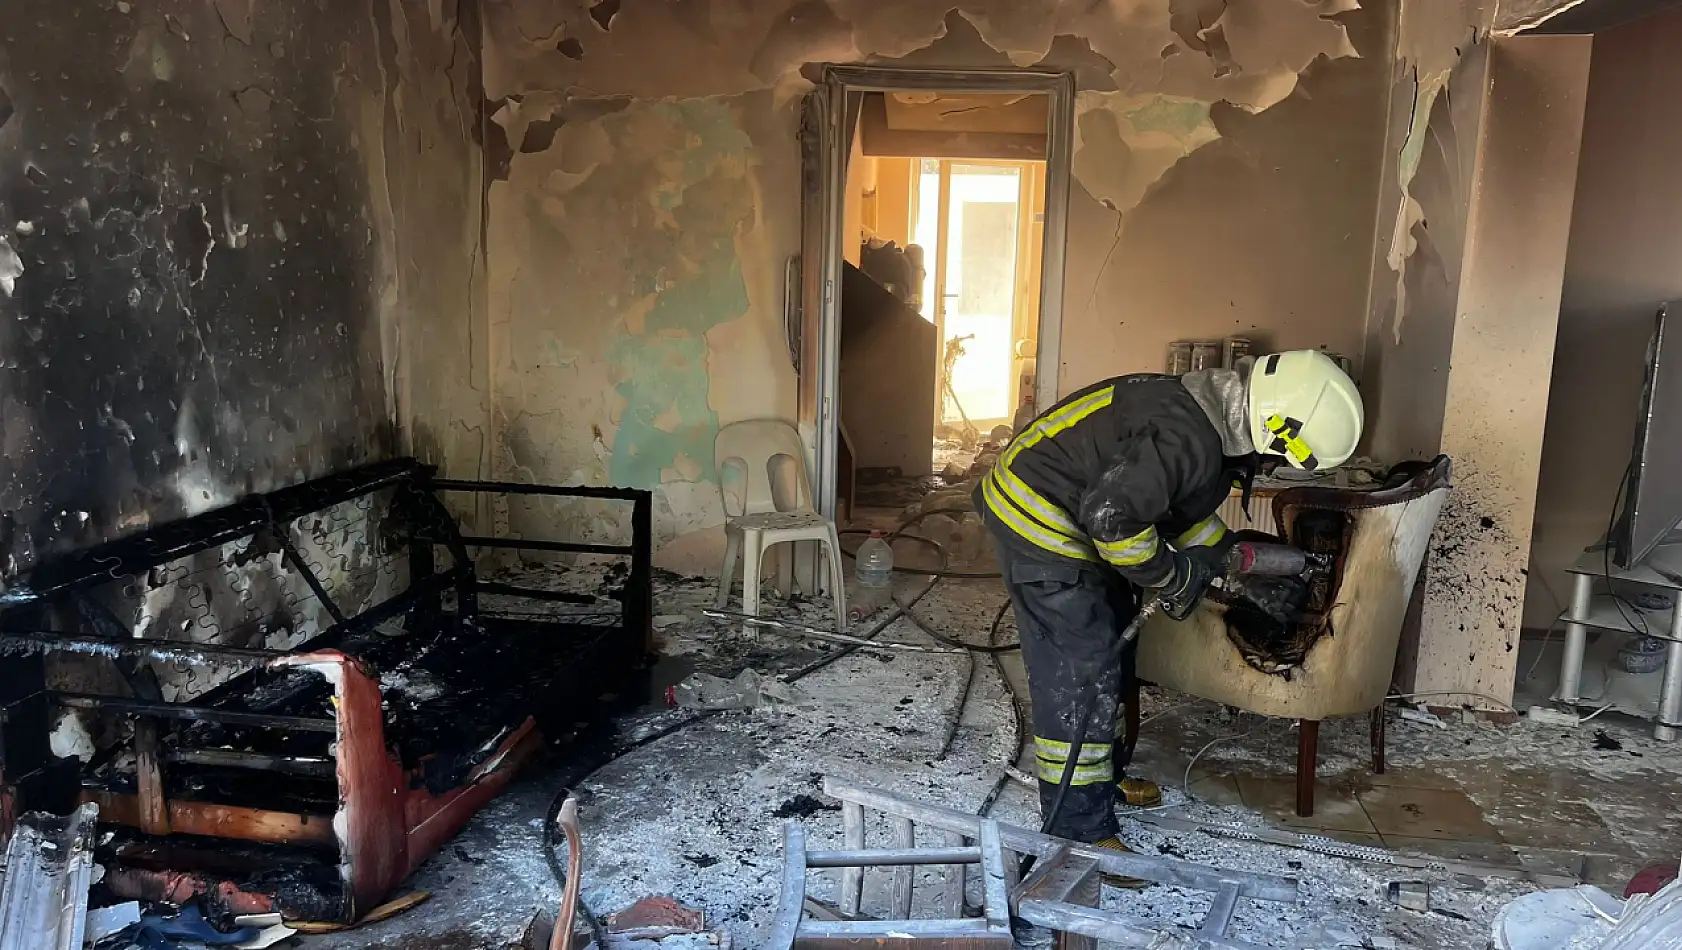 SON DAKİKA: Fethiye Karagözler'de Tüp Patladı, 2 Kişi Yaralandı